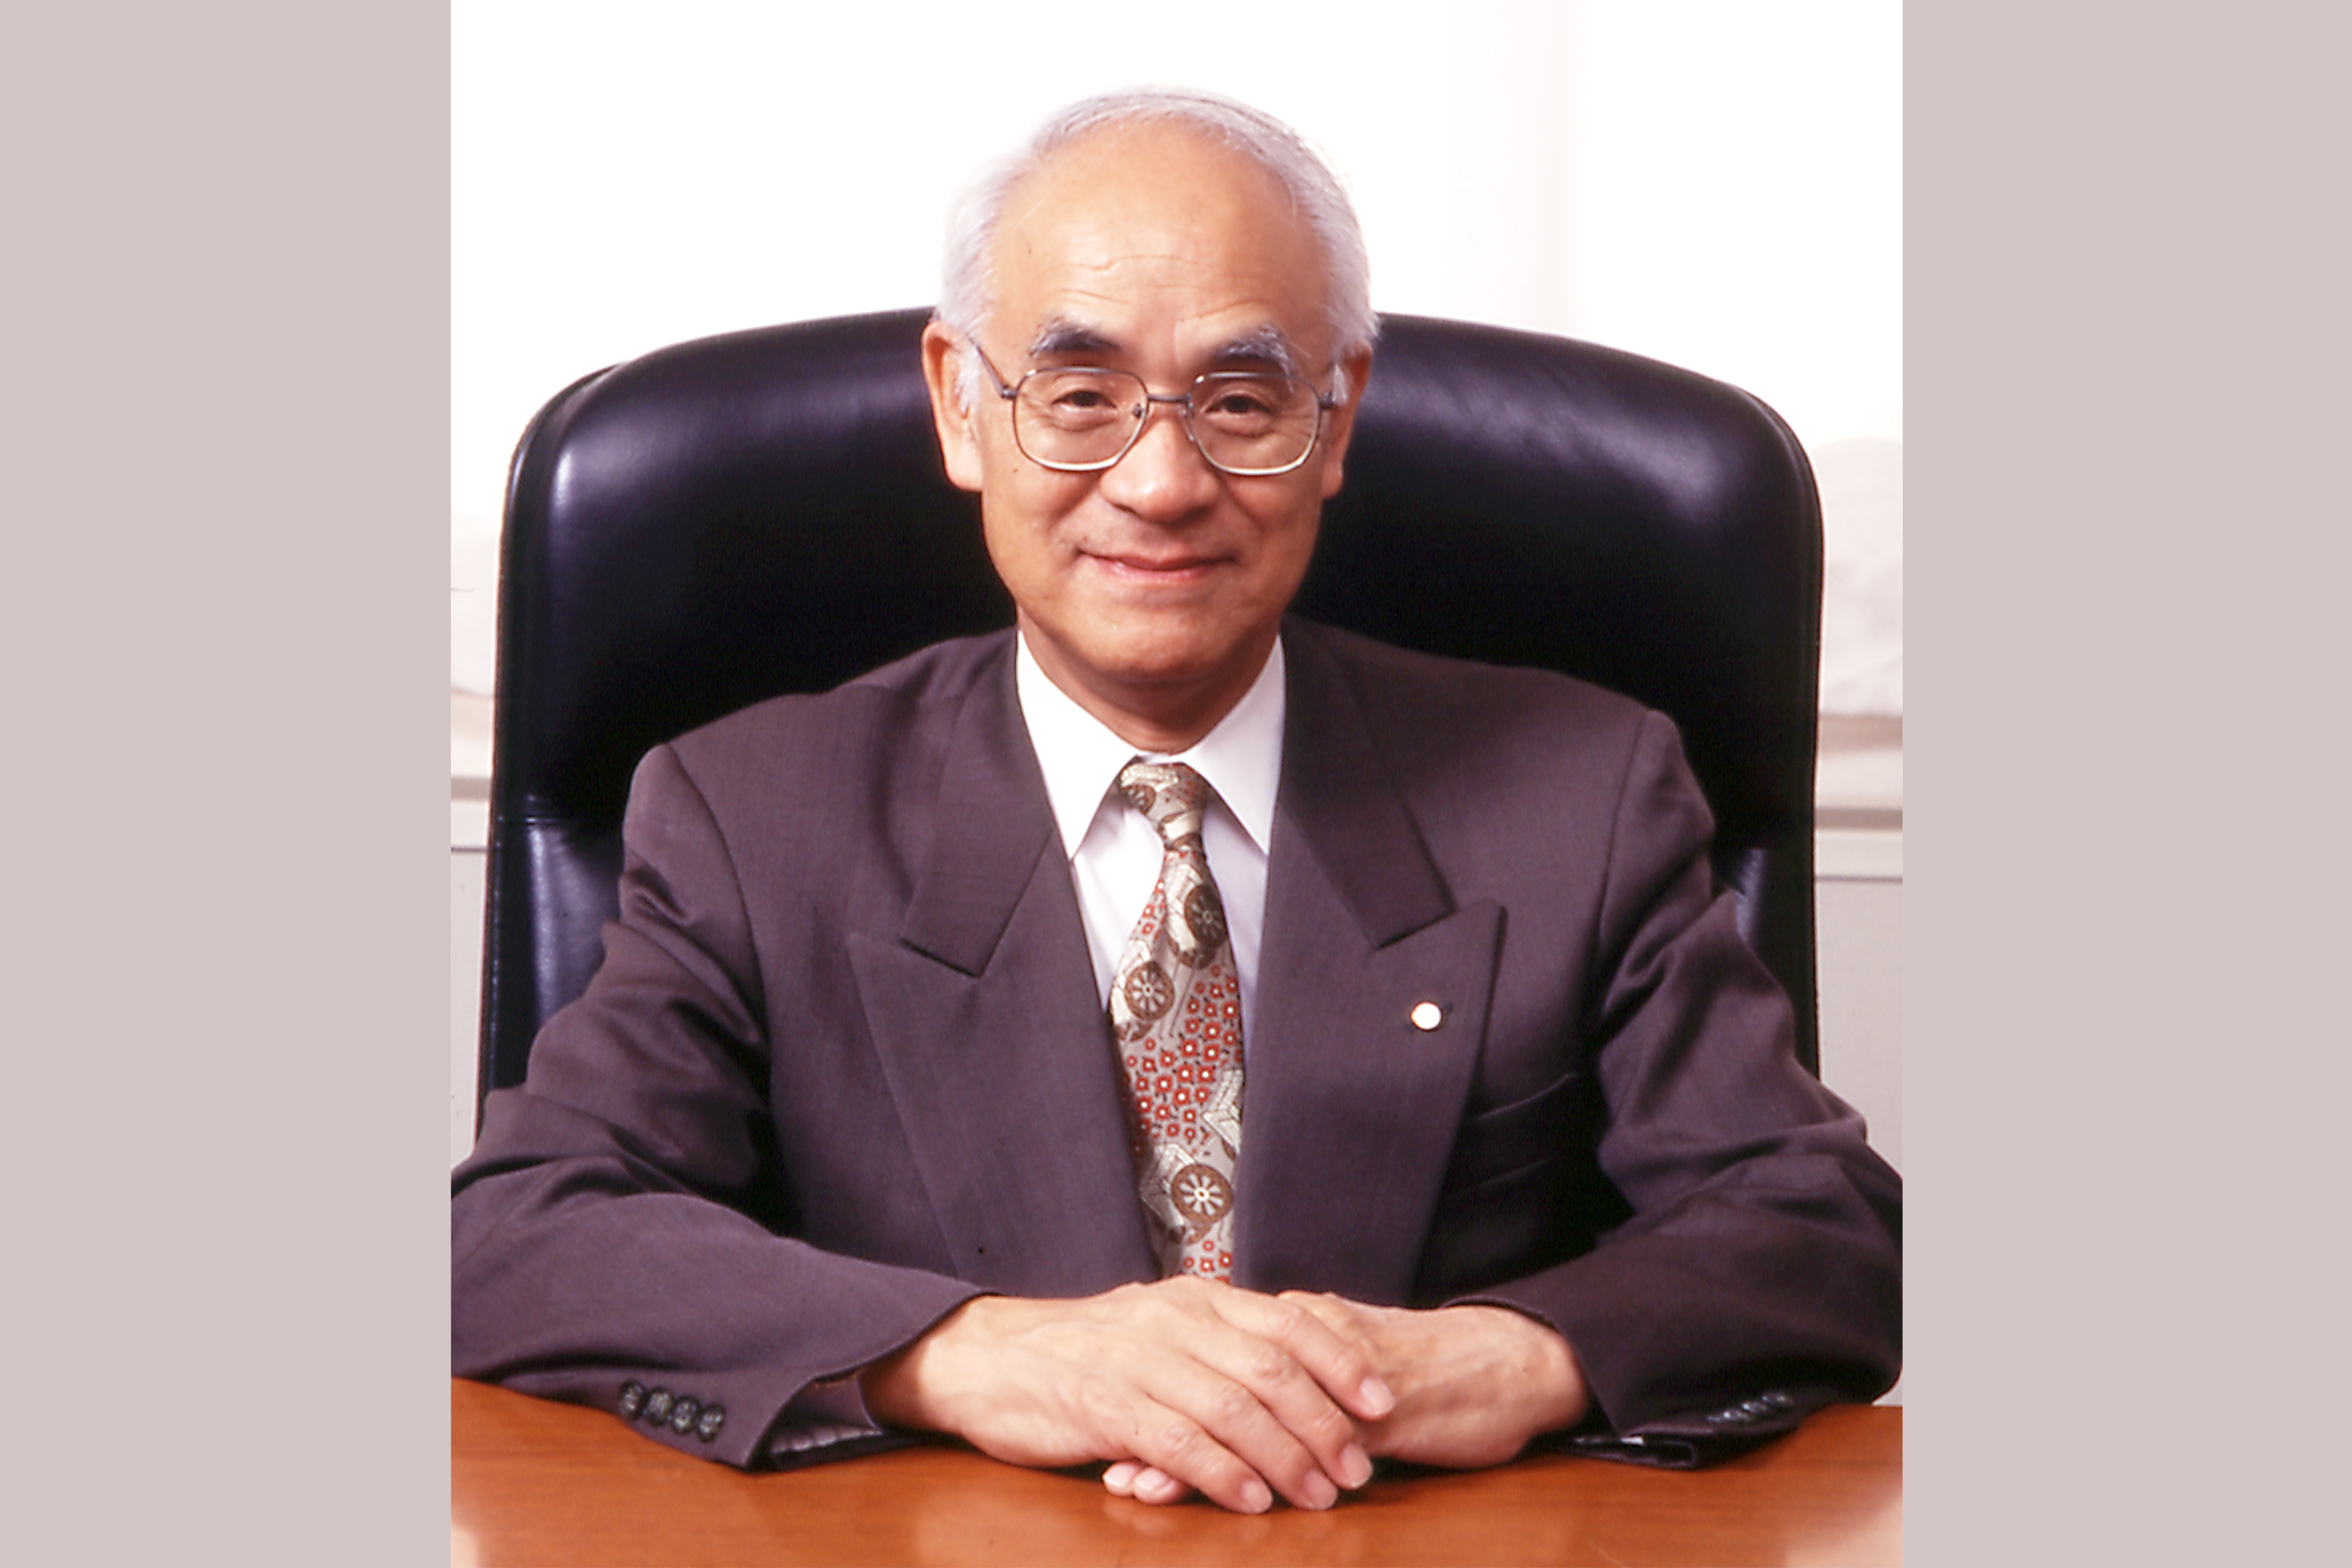 本学初代学長の北垣宗治先生がお亡くなりになられました